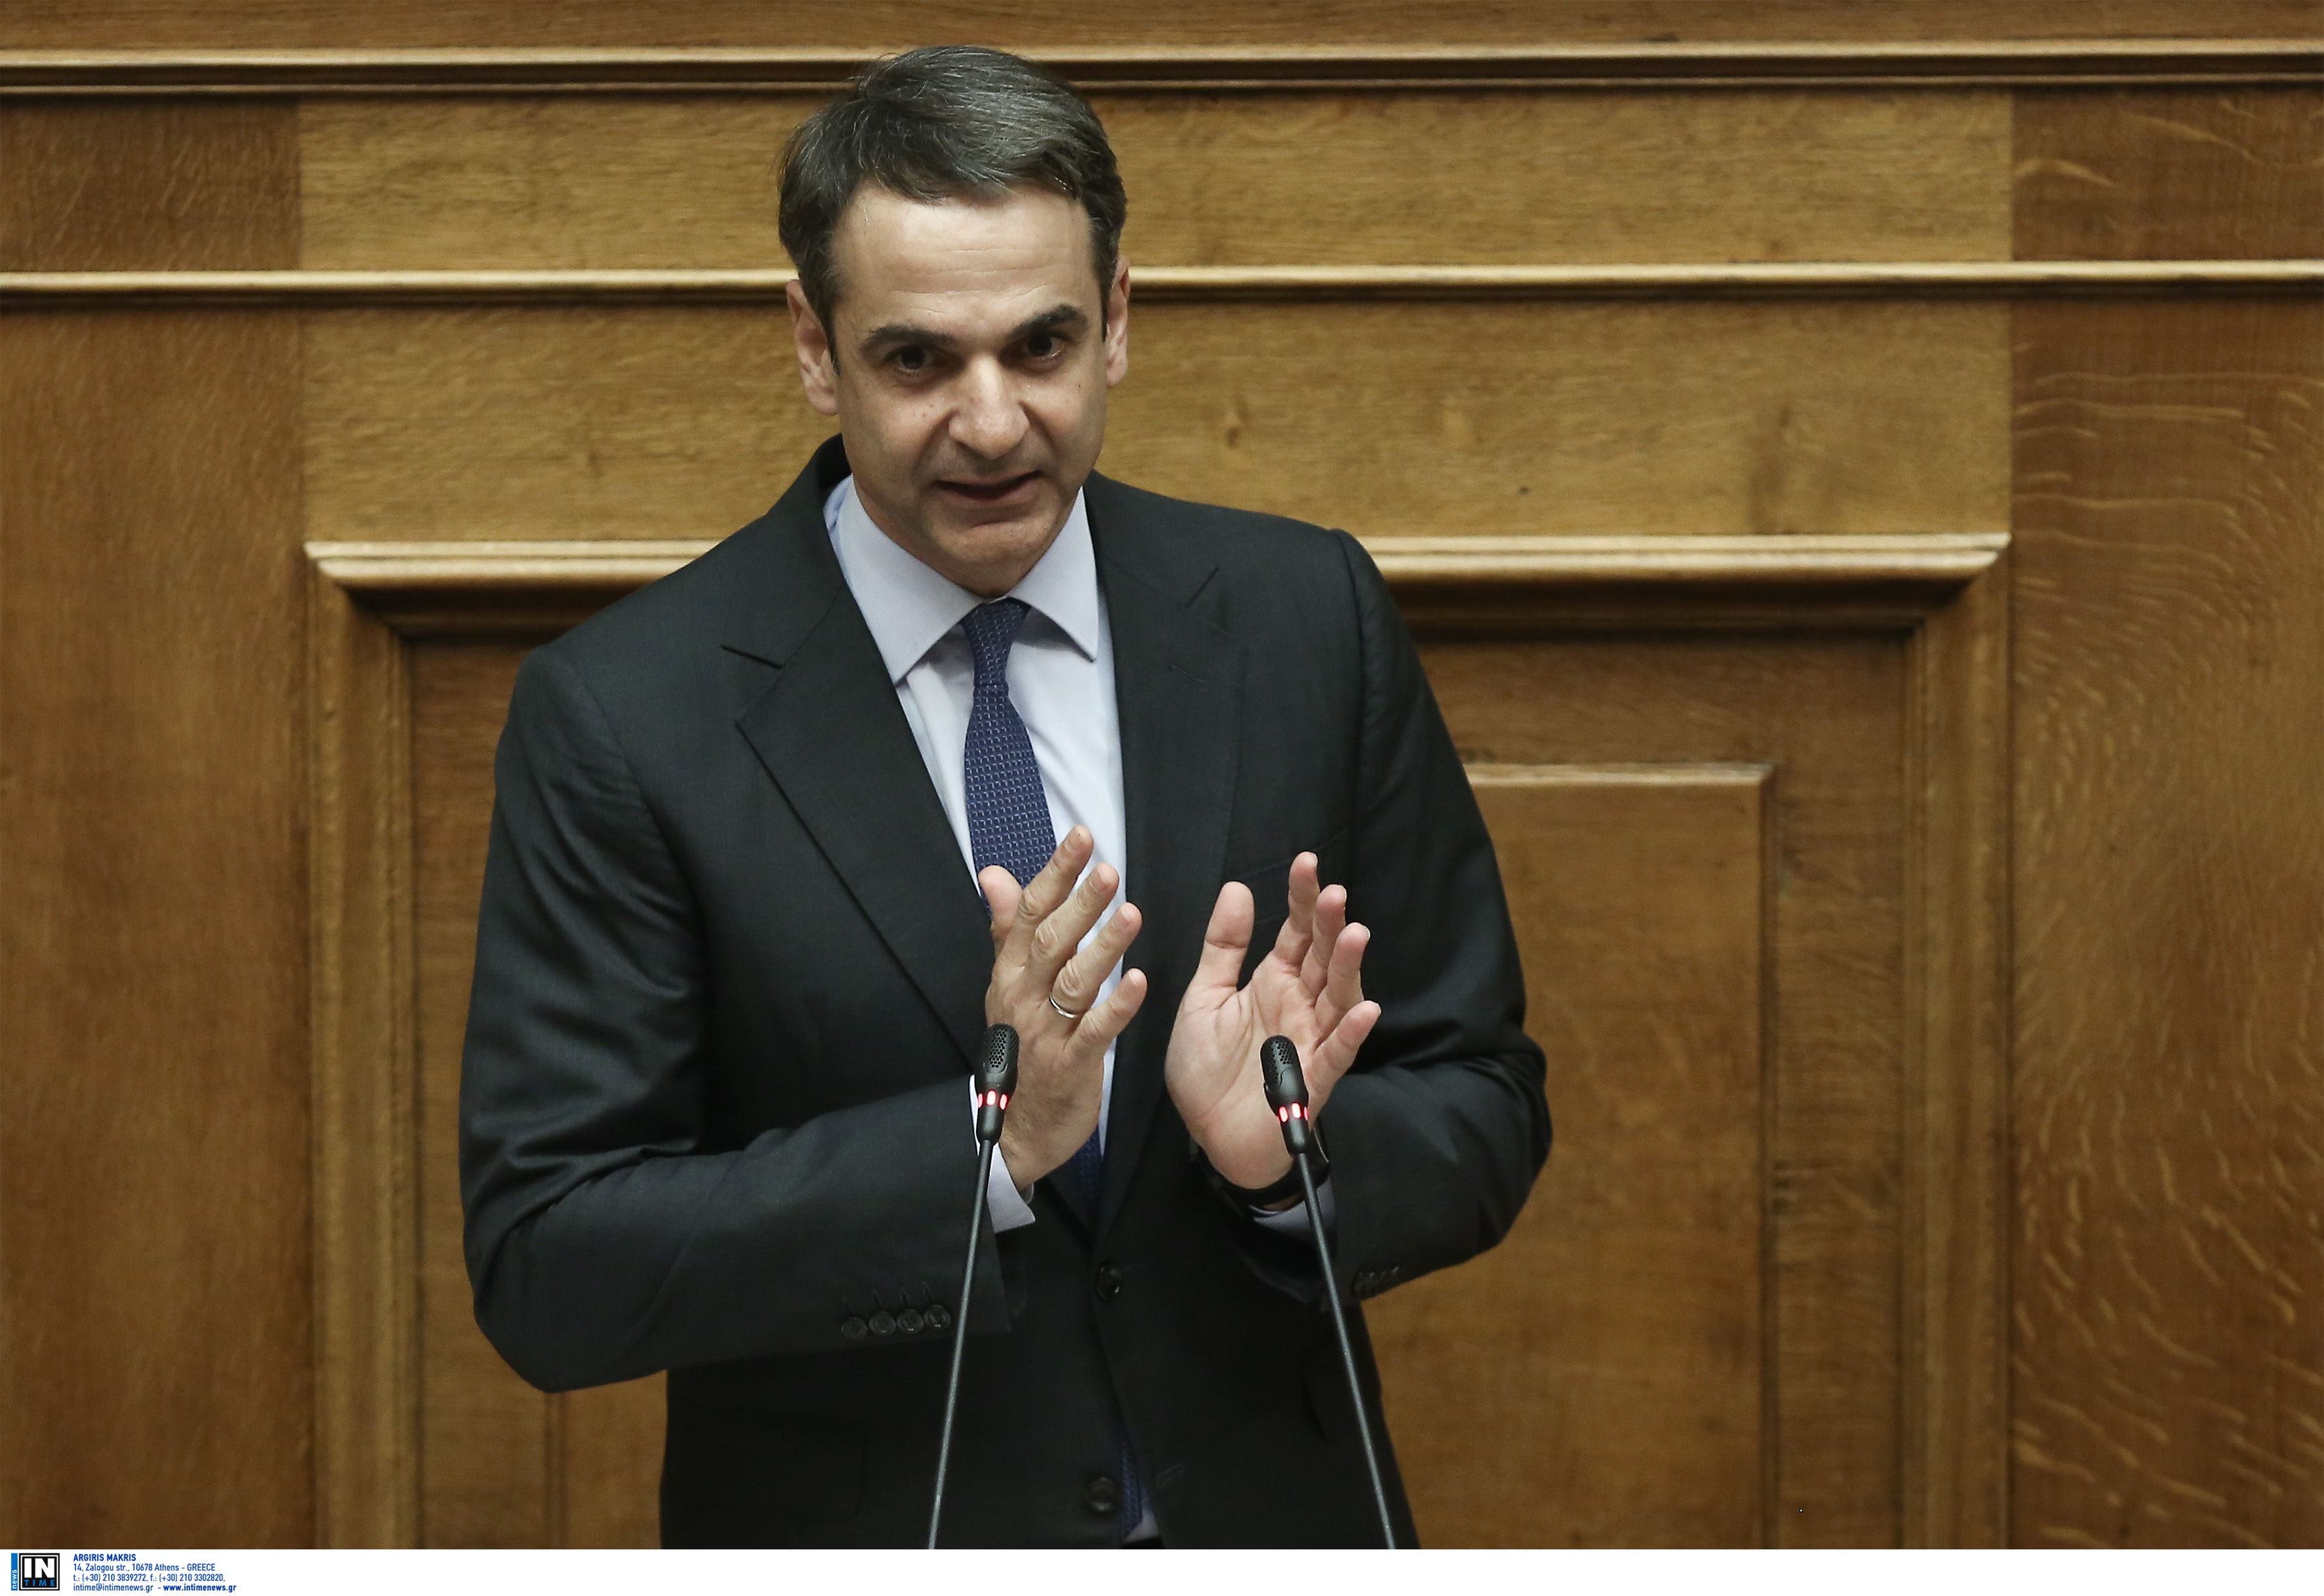 Μητσοτάκης: Θα τελειώσετε πολιτικά κ. Τσίπρα με μια κάλπη, όχι με δέκα